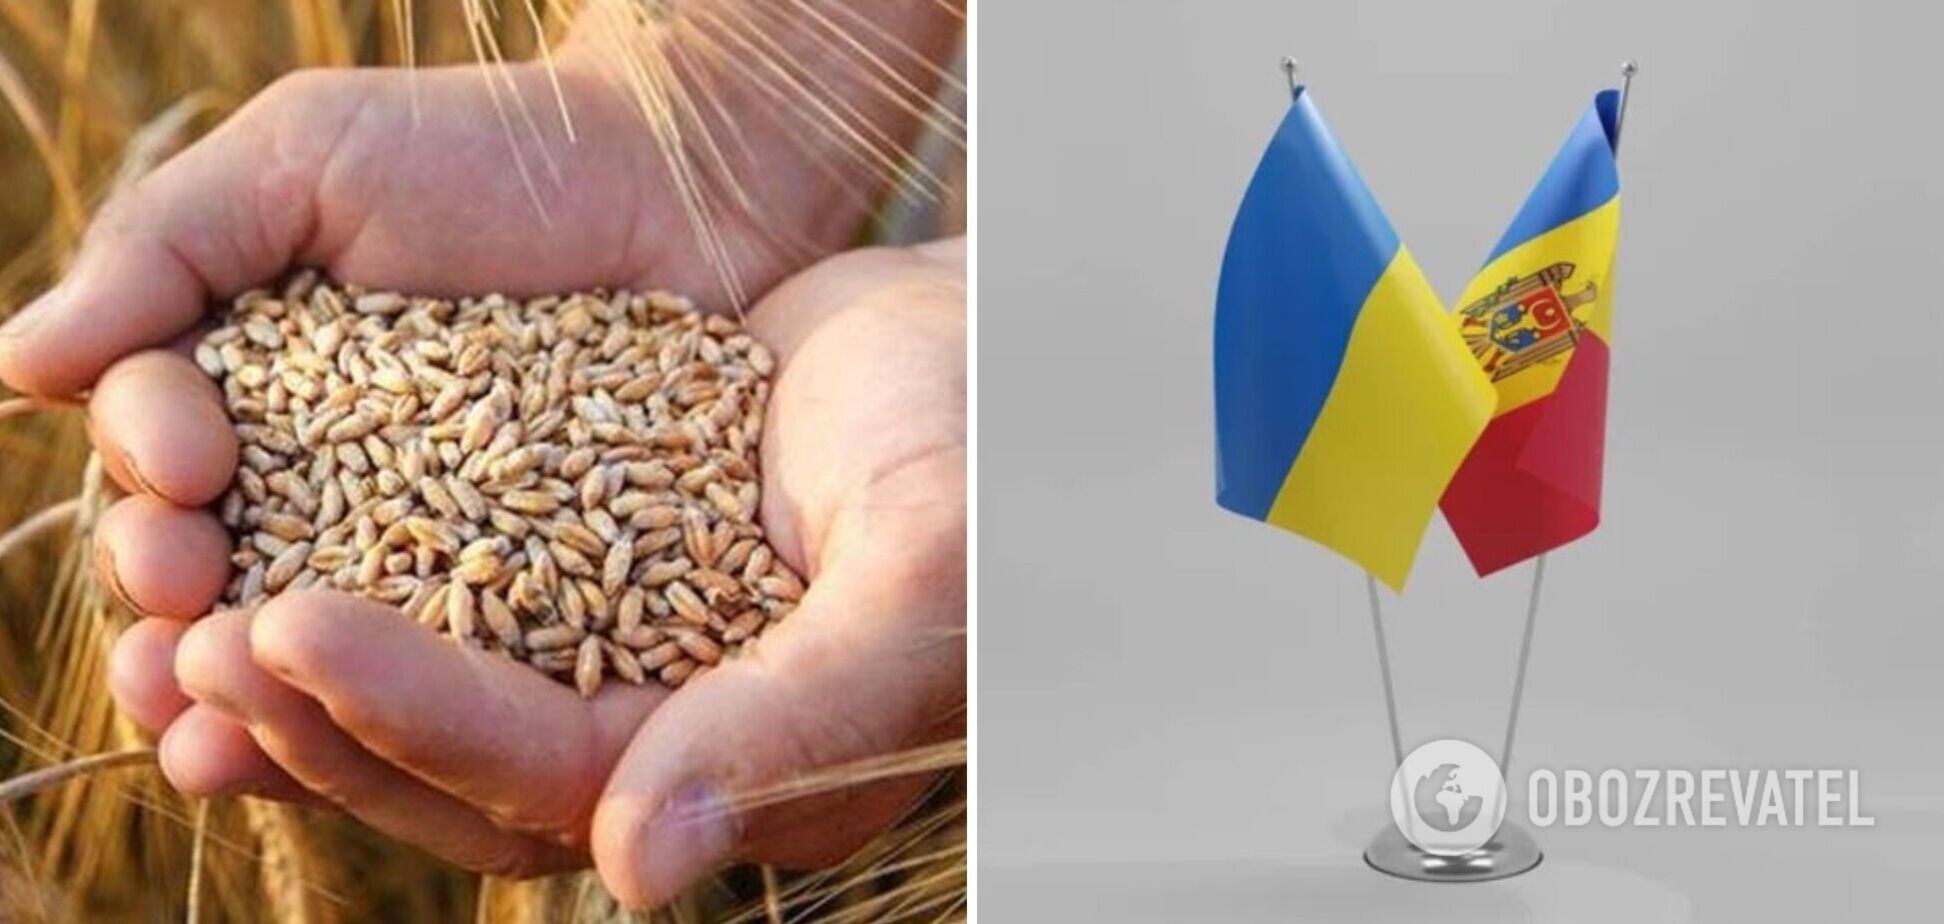 В ответ на недружественные действия Укрна готовит запрет всего импорта из Молдовы